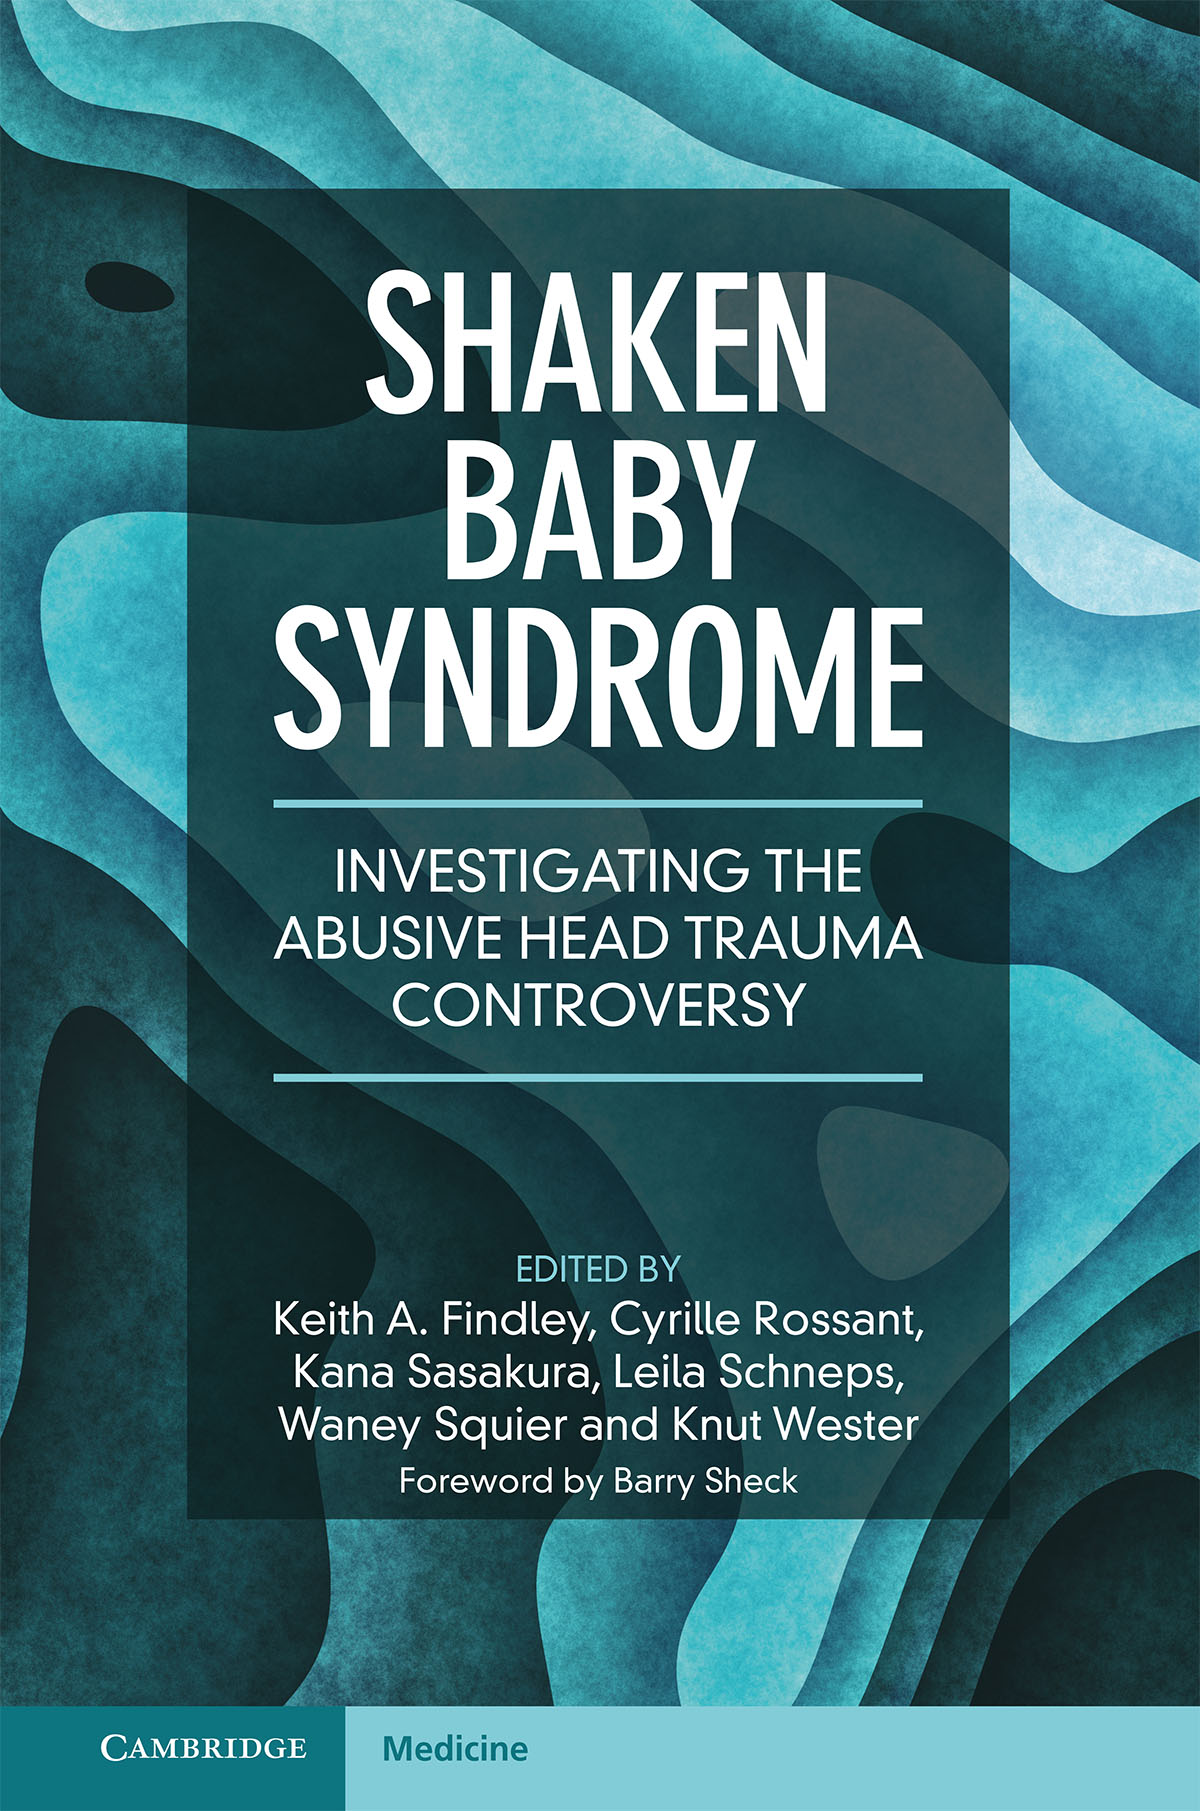 Livre en anglais sur le syndrome du bébé secoué